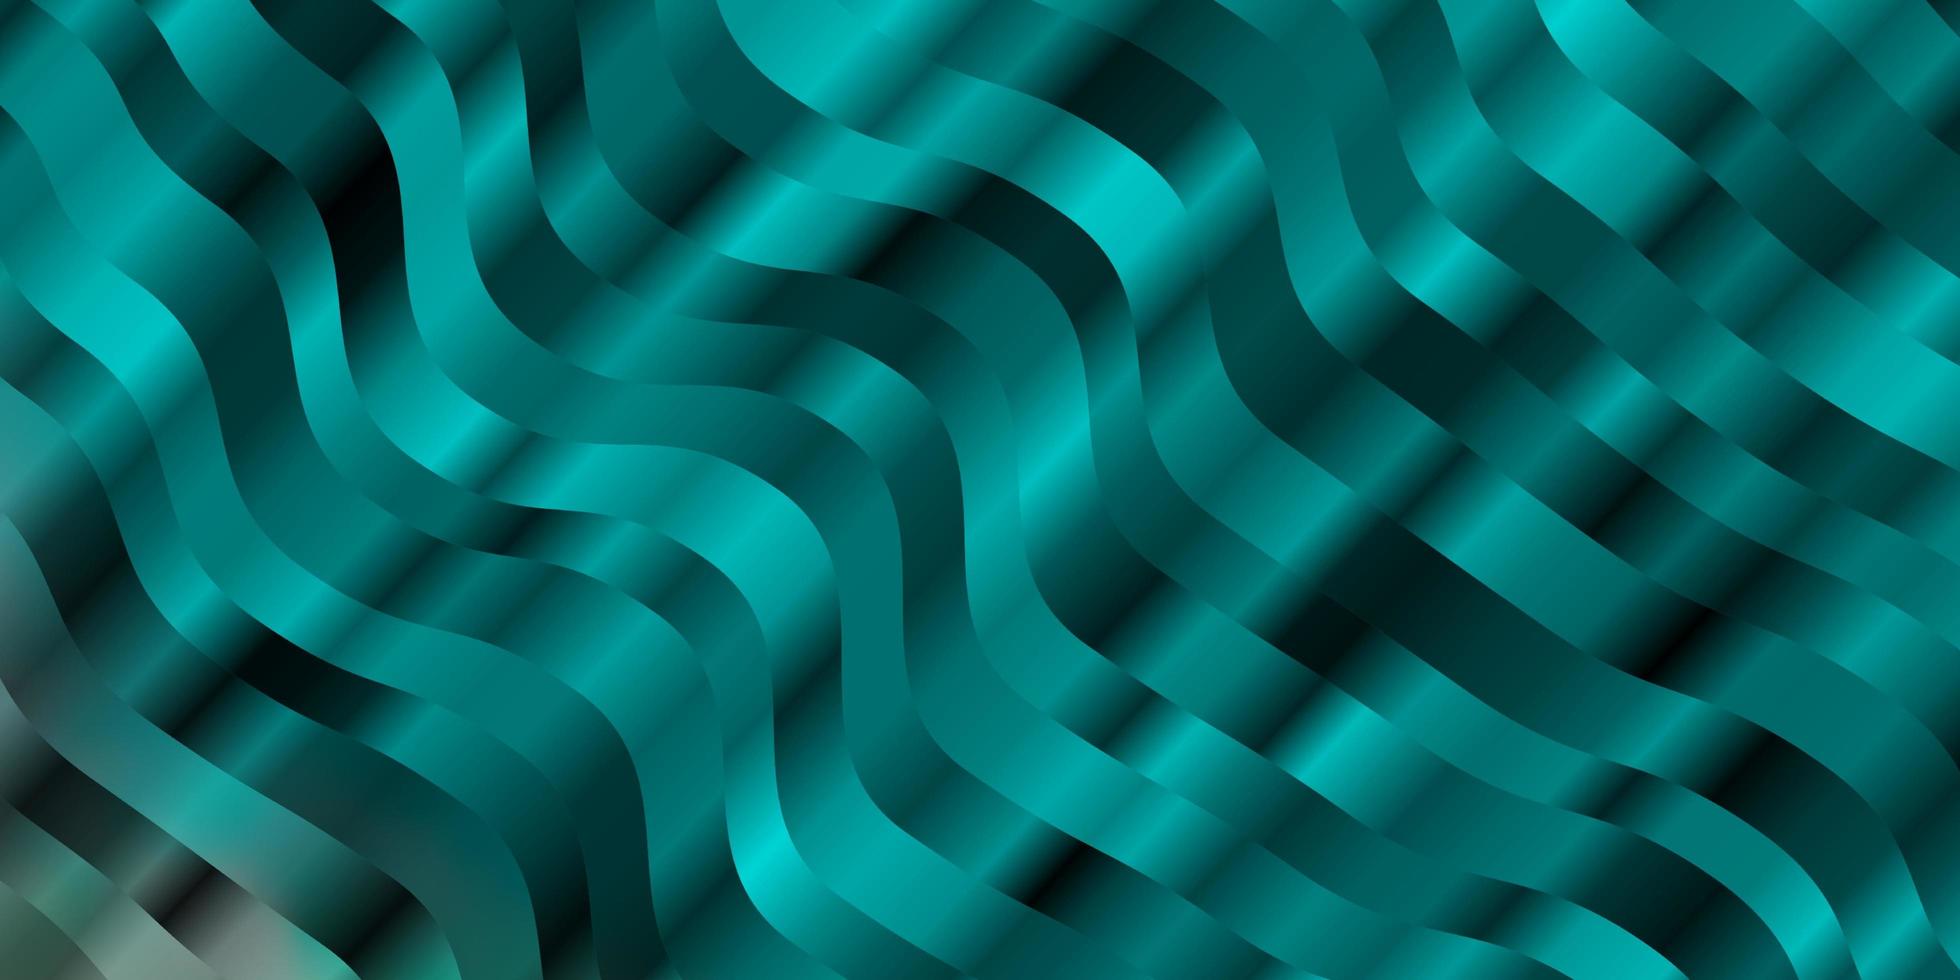 sfondo vettoriale azzurro, verde con curve. nuovissima illustrazione colorata con linee piegate. modello per opuscoli aziendali, volantini